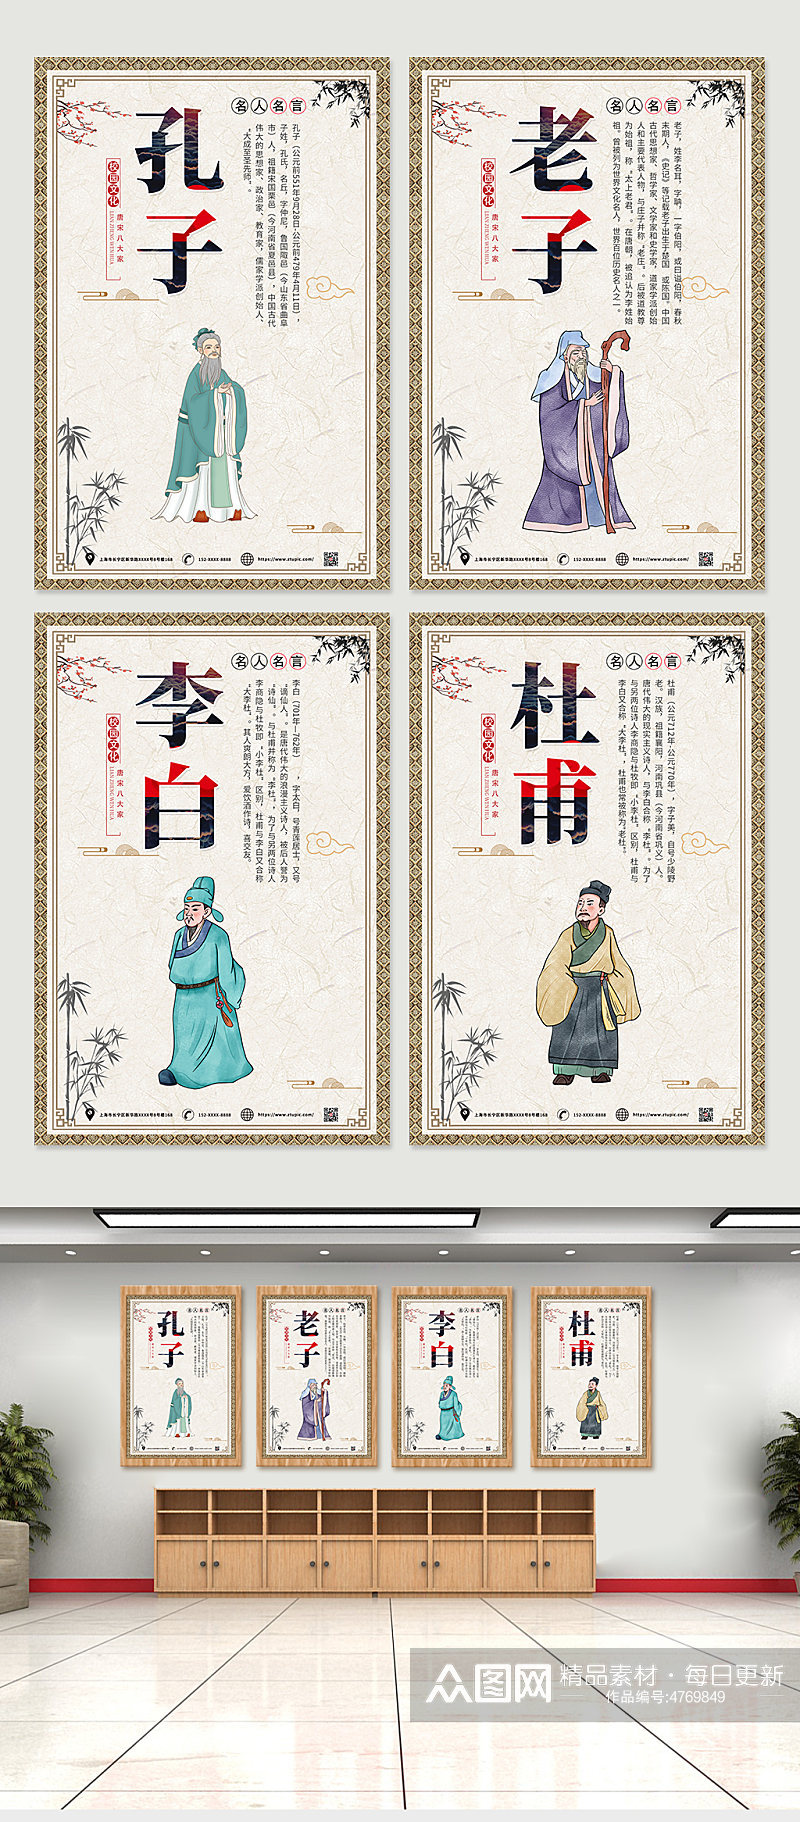 大气中国风名人名言系列海报设计素材